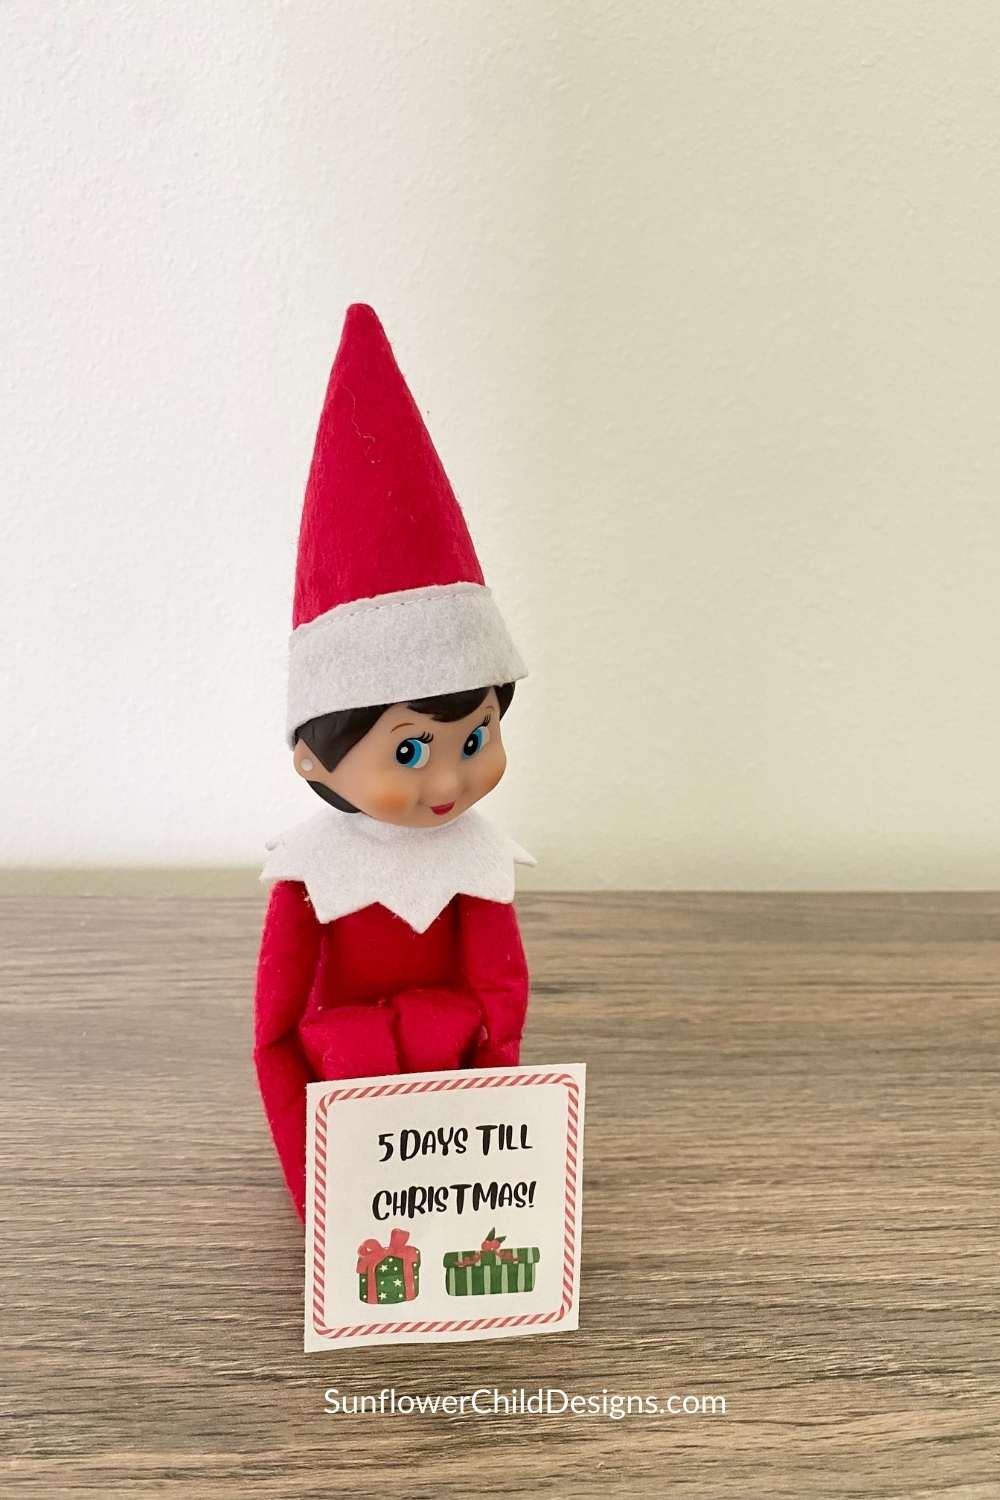 Elf announces 5 days left until Christmas